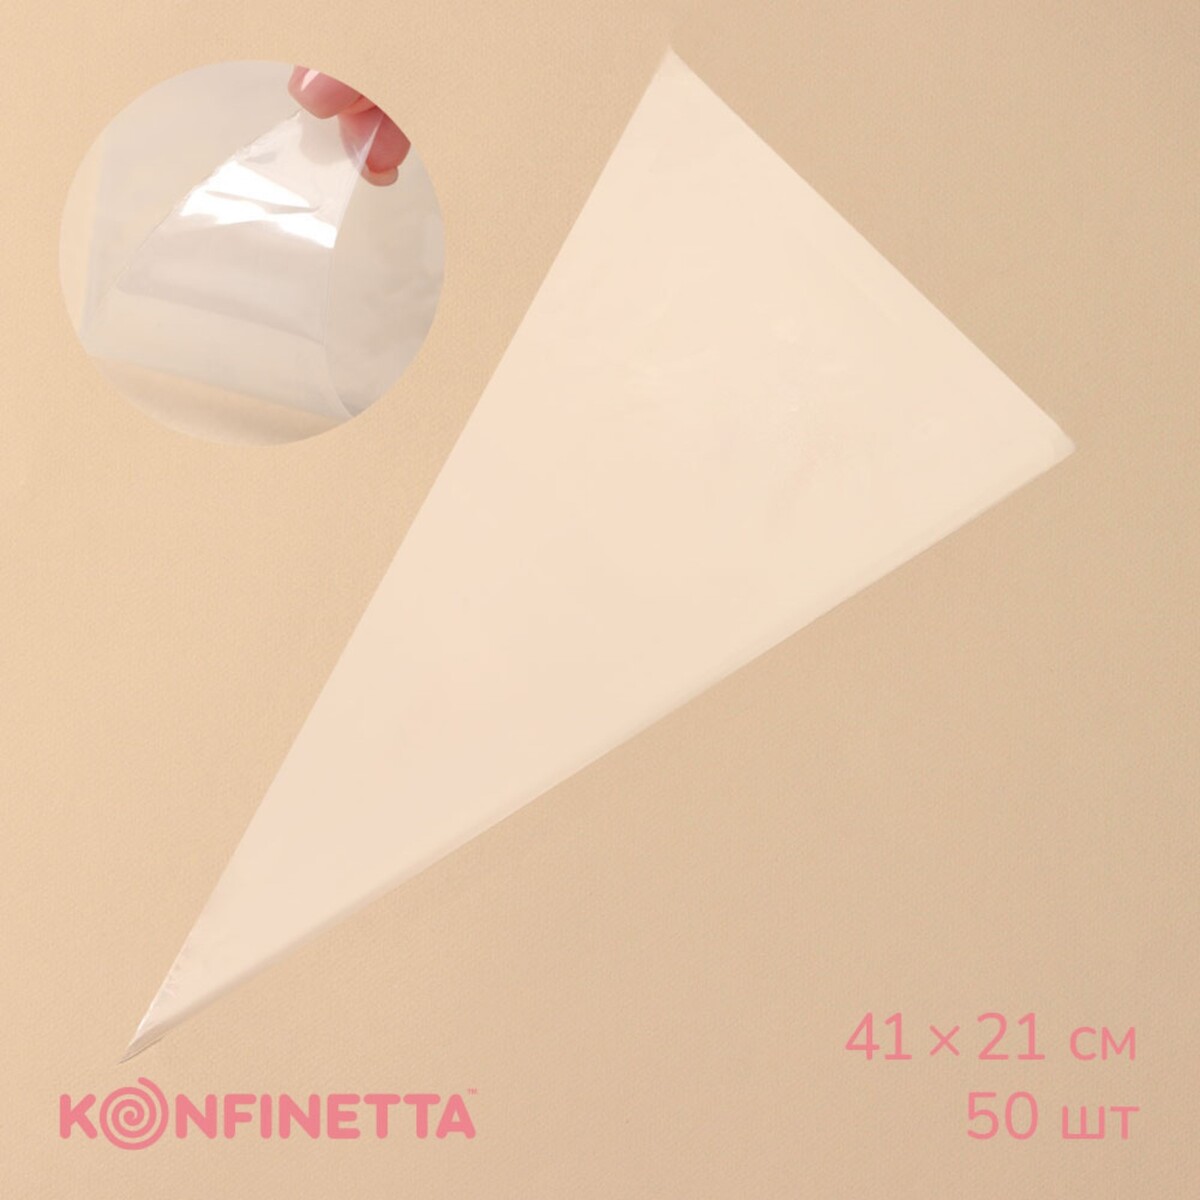 Кондитерские мешки konfinetta, 41×21 см, 50 шт, цвет прозрачный кондитерский мешок konfinetta 45×26 см хлопок